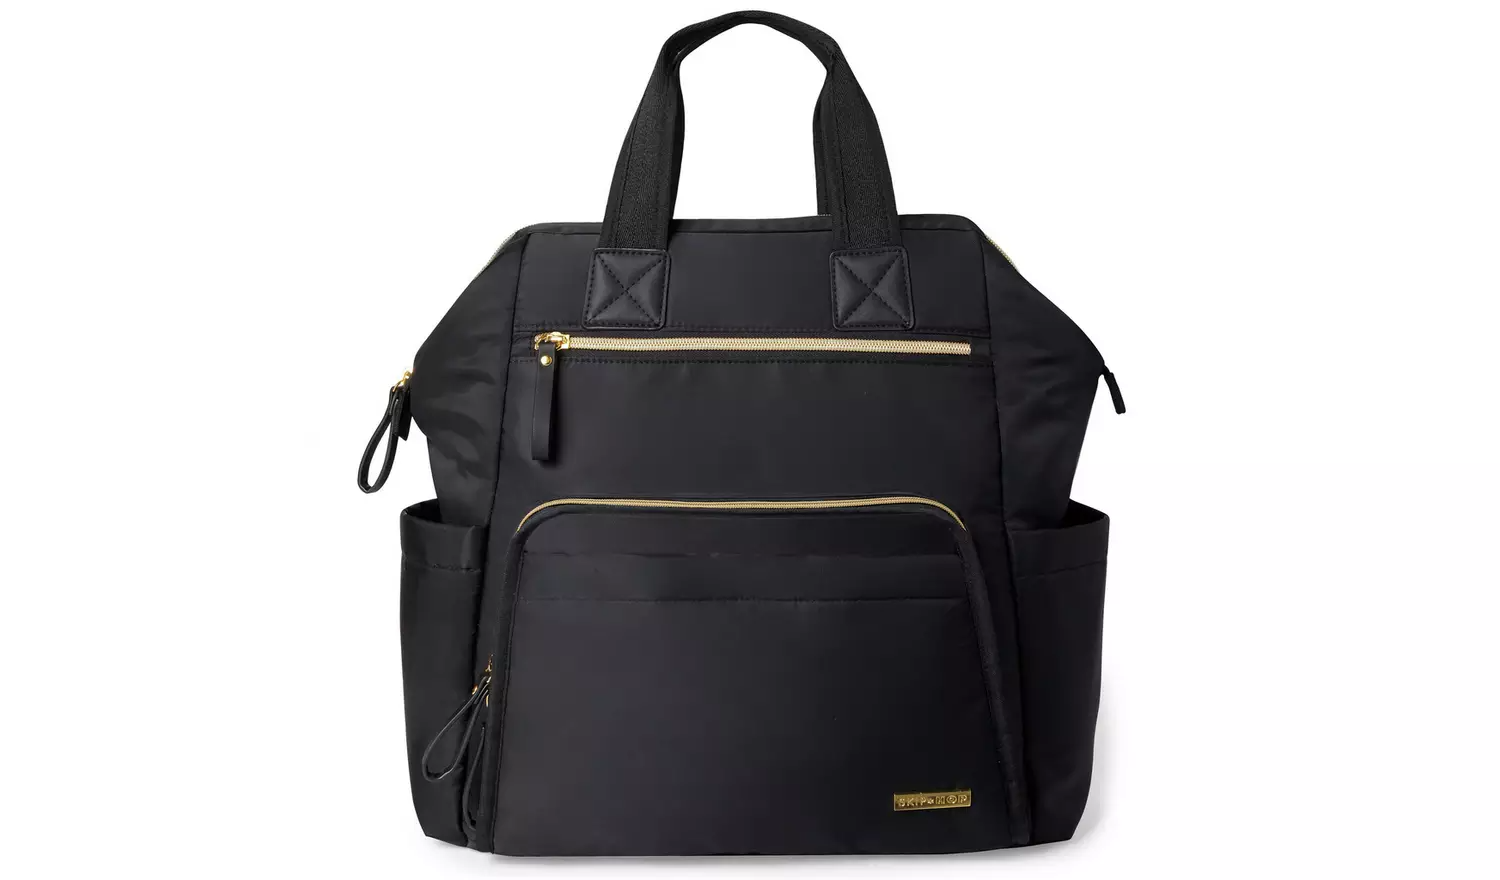 Skip Hop Main Frame Backpack Changing Bag – Black